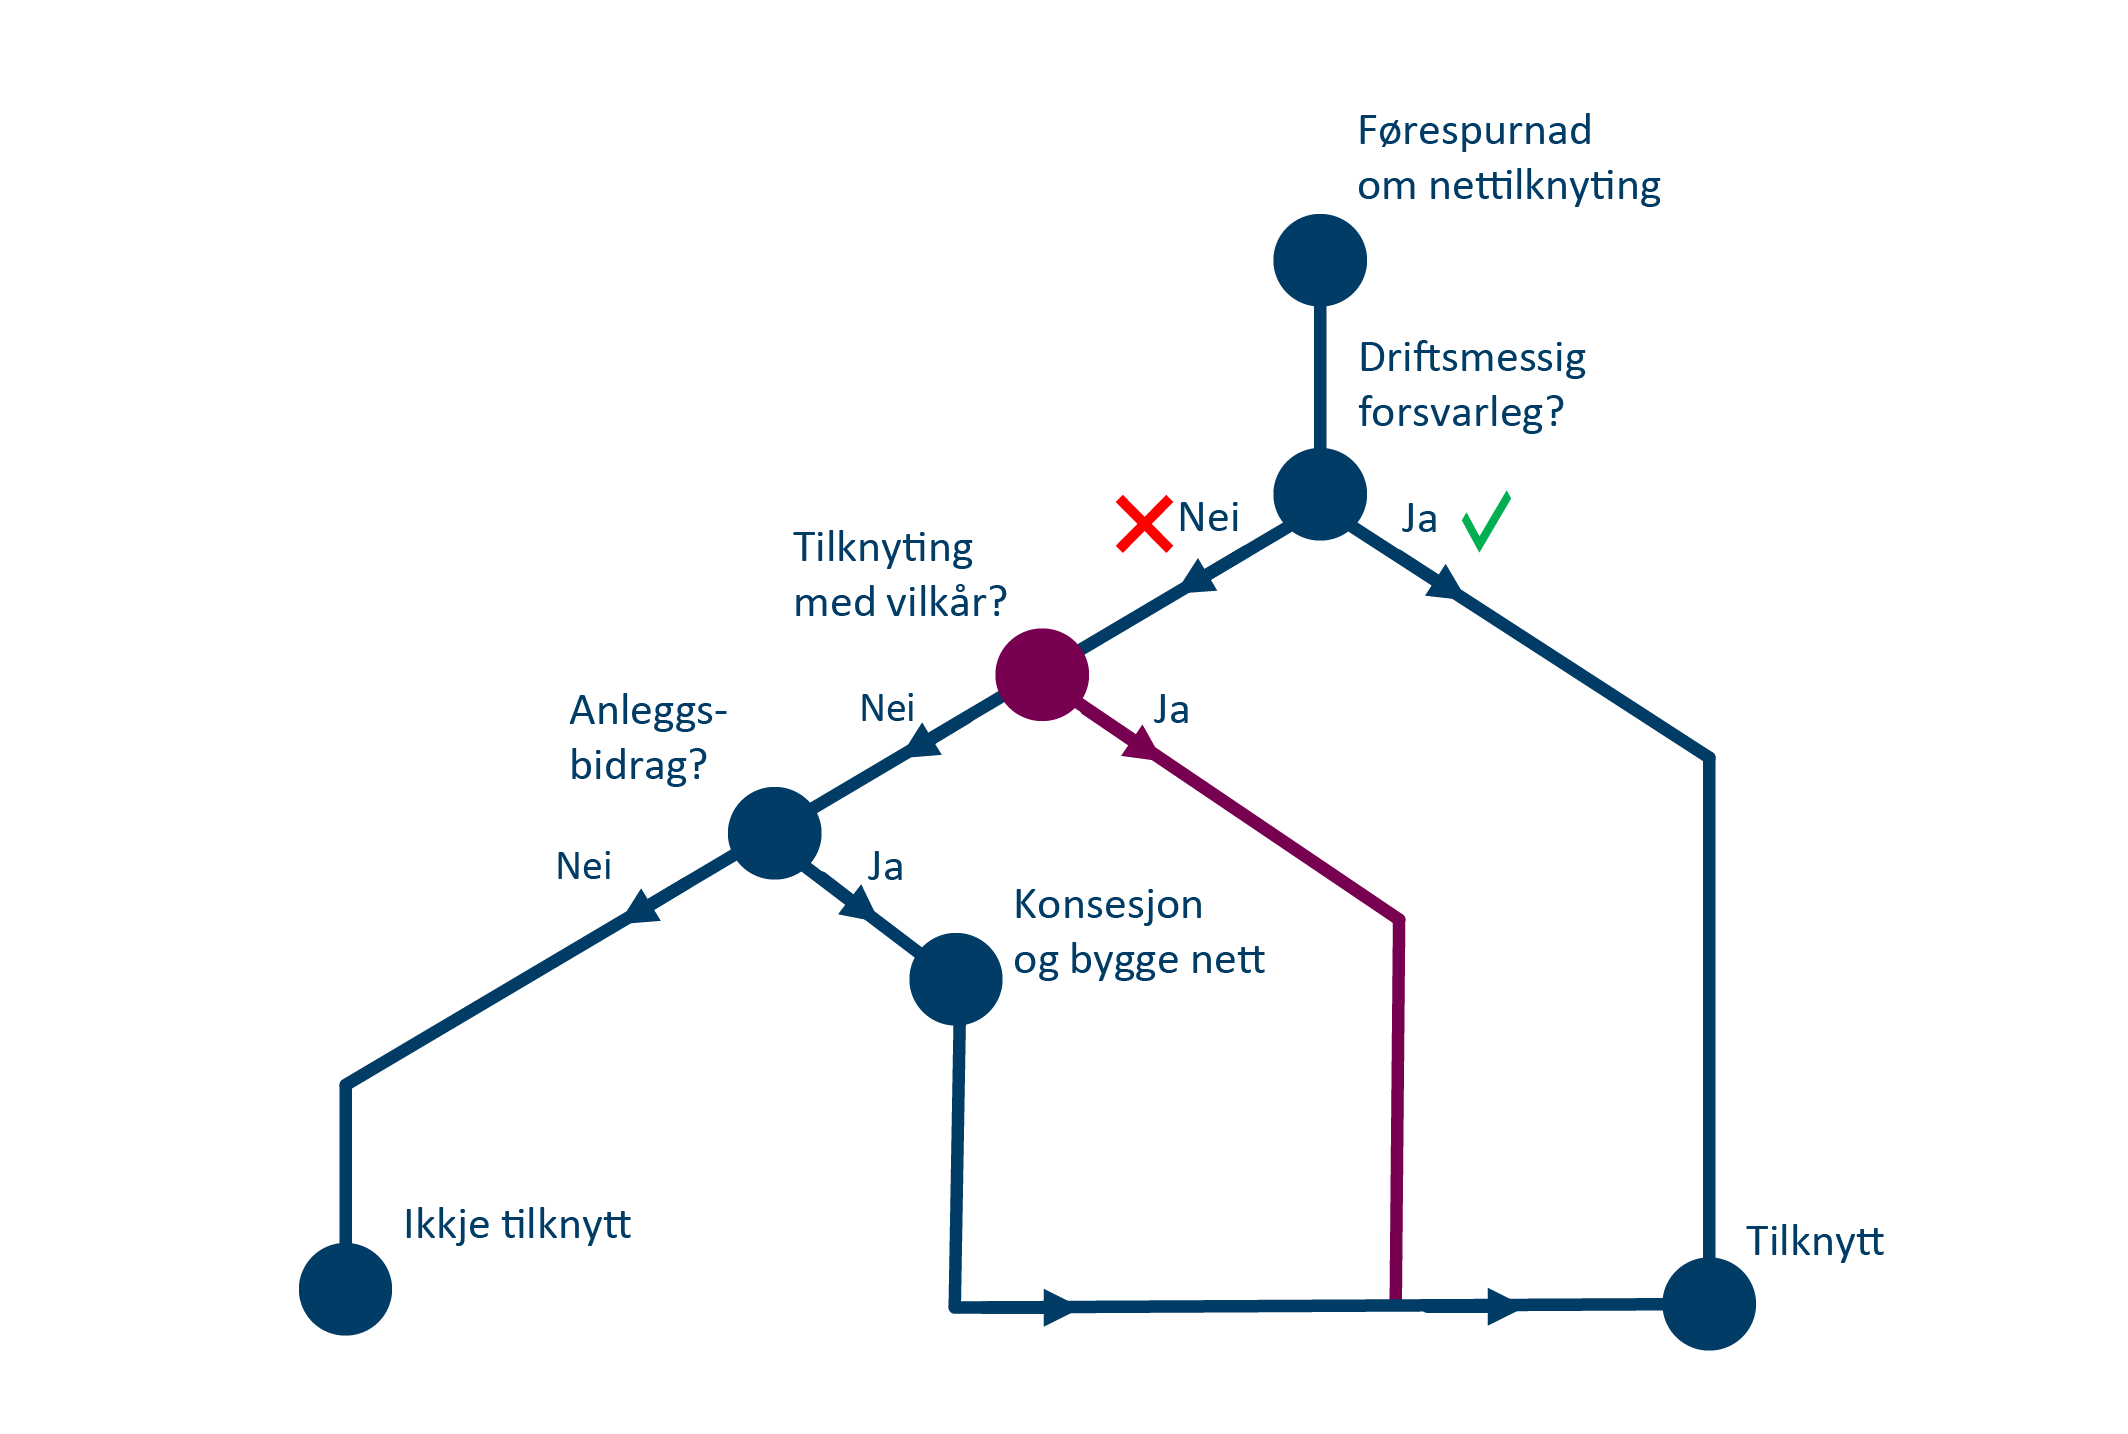 Fikgur med skjematisk oversikt over tilknytningsprosessen til strømnett